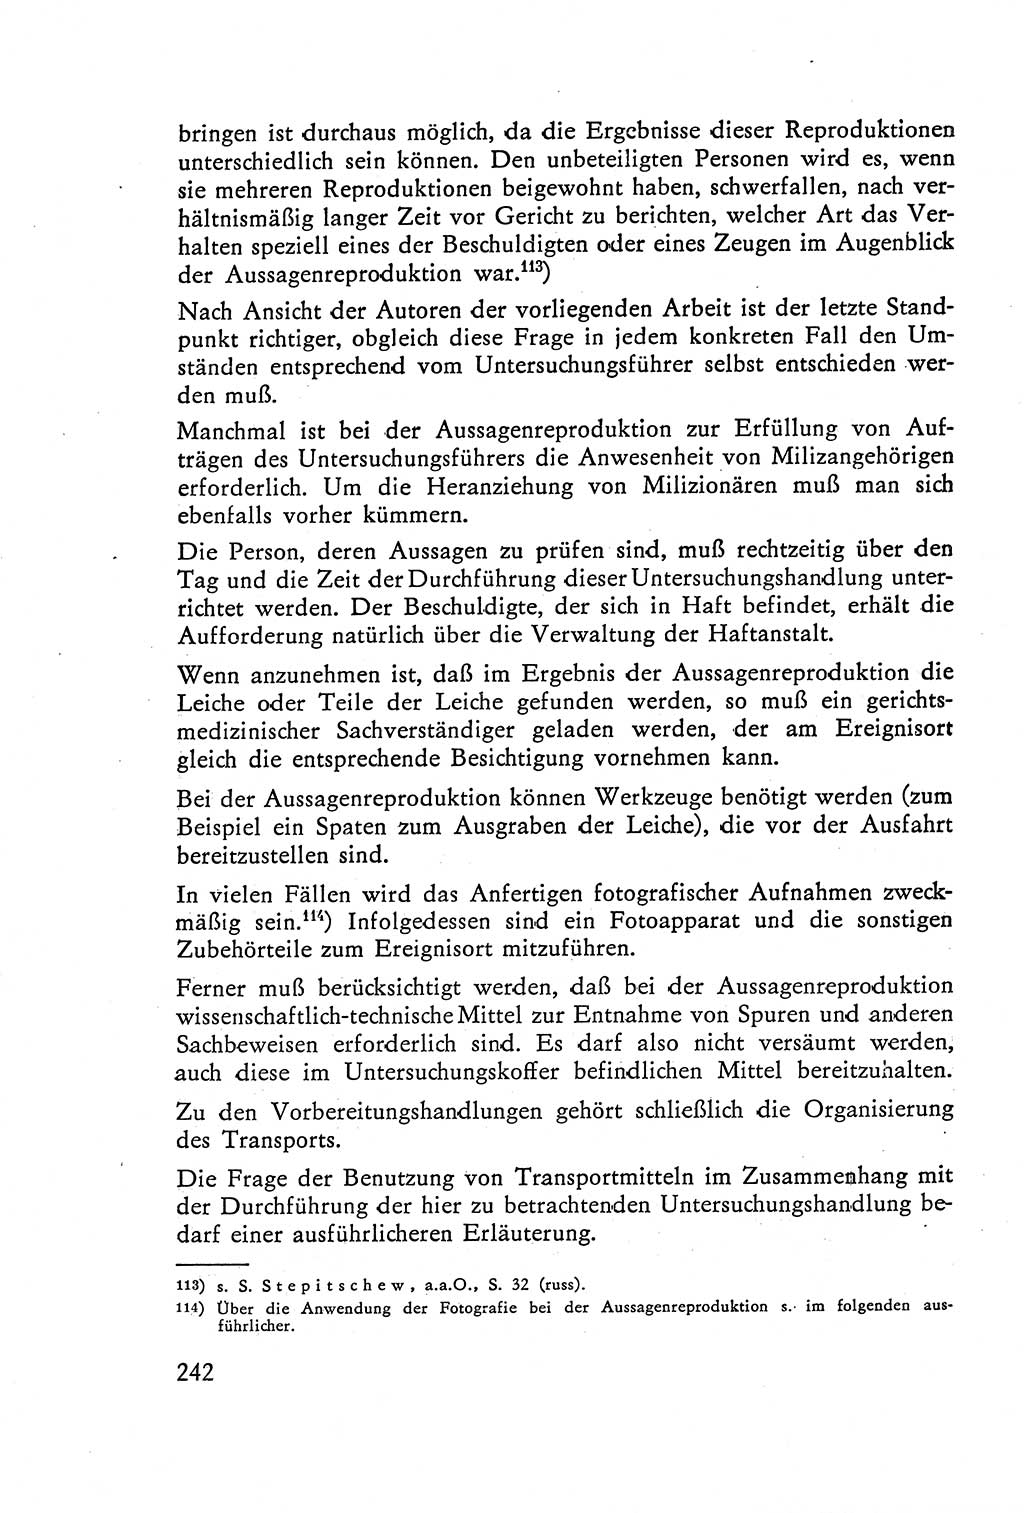 Die Vernehmung [Deutsche Demokratische Republik (DDR)] 1960, Seite 242 (Vern. DDR 1960, S. 242)